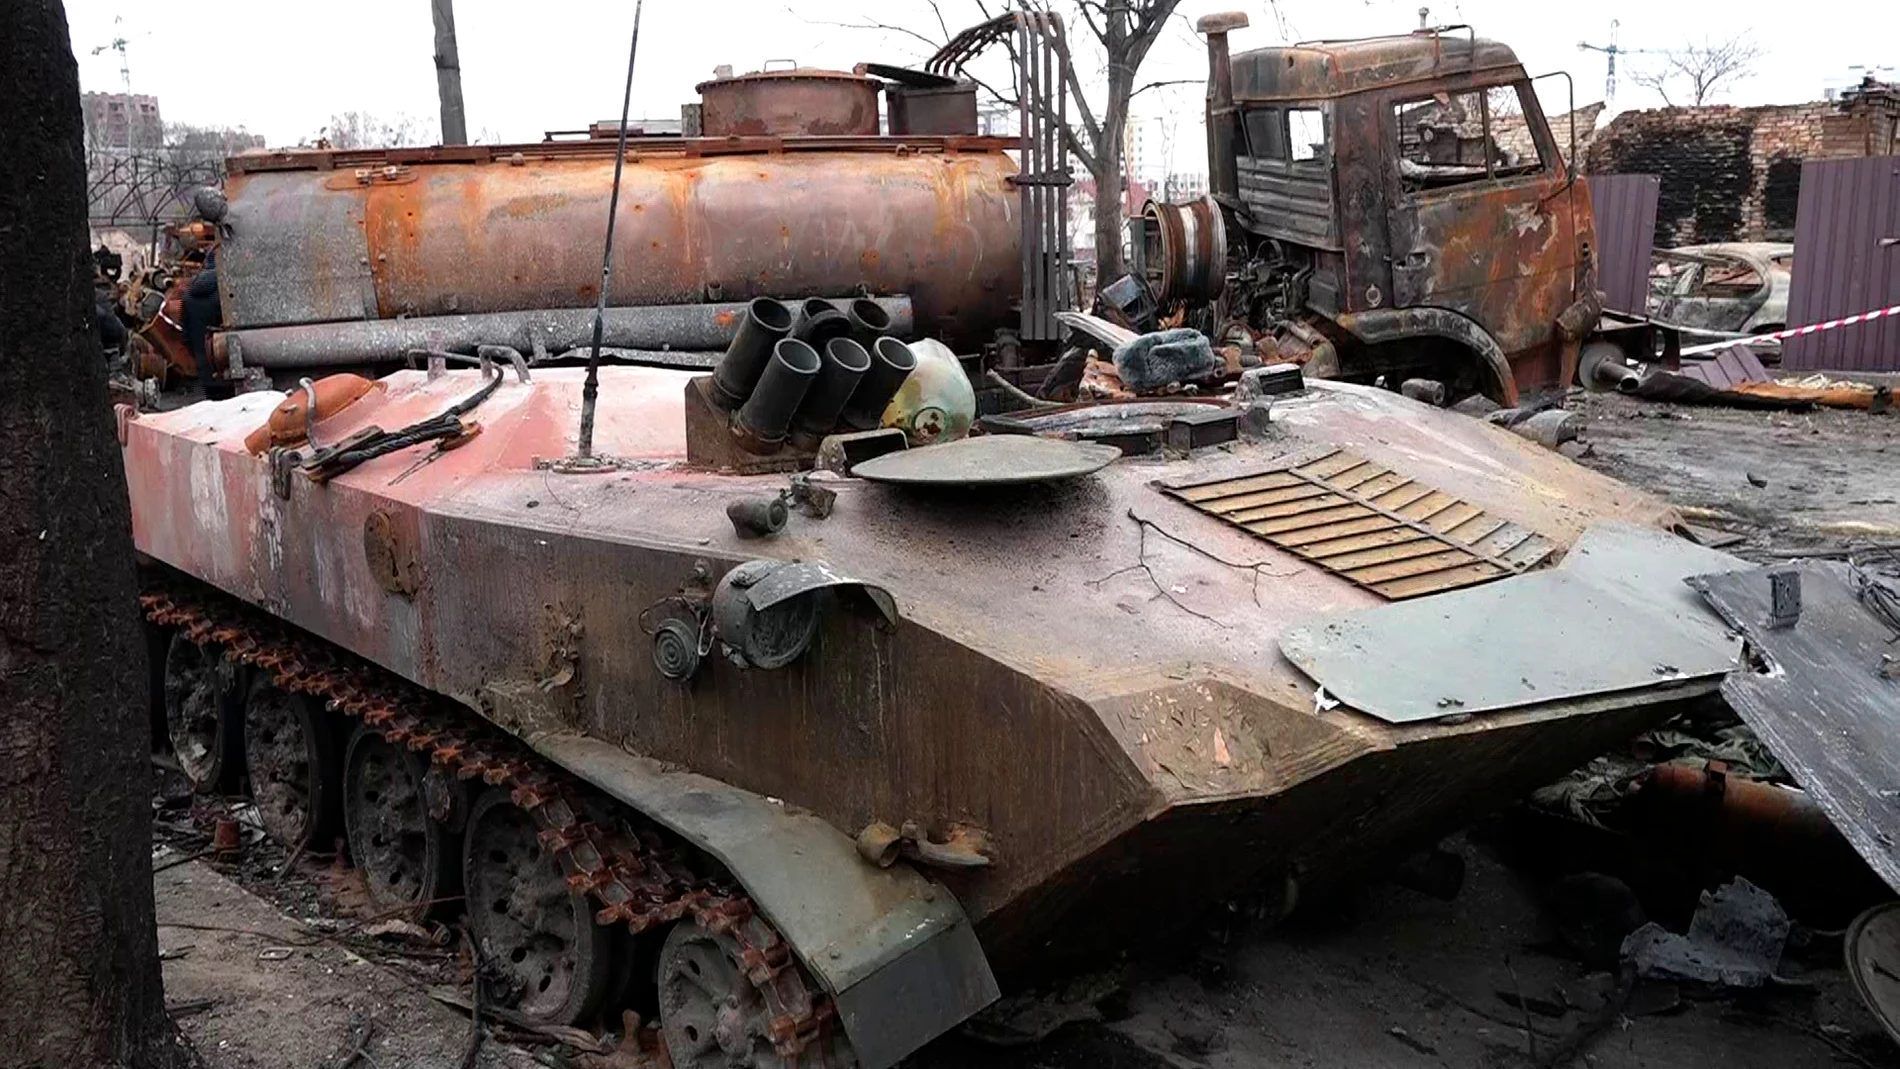 Vista general del destrozo tras las retirada de las tropas rusas en la localidad ucraniana de Bucha.EFE / Clàudia Sacrest